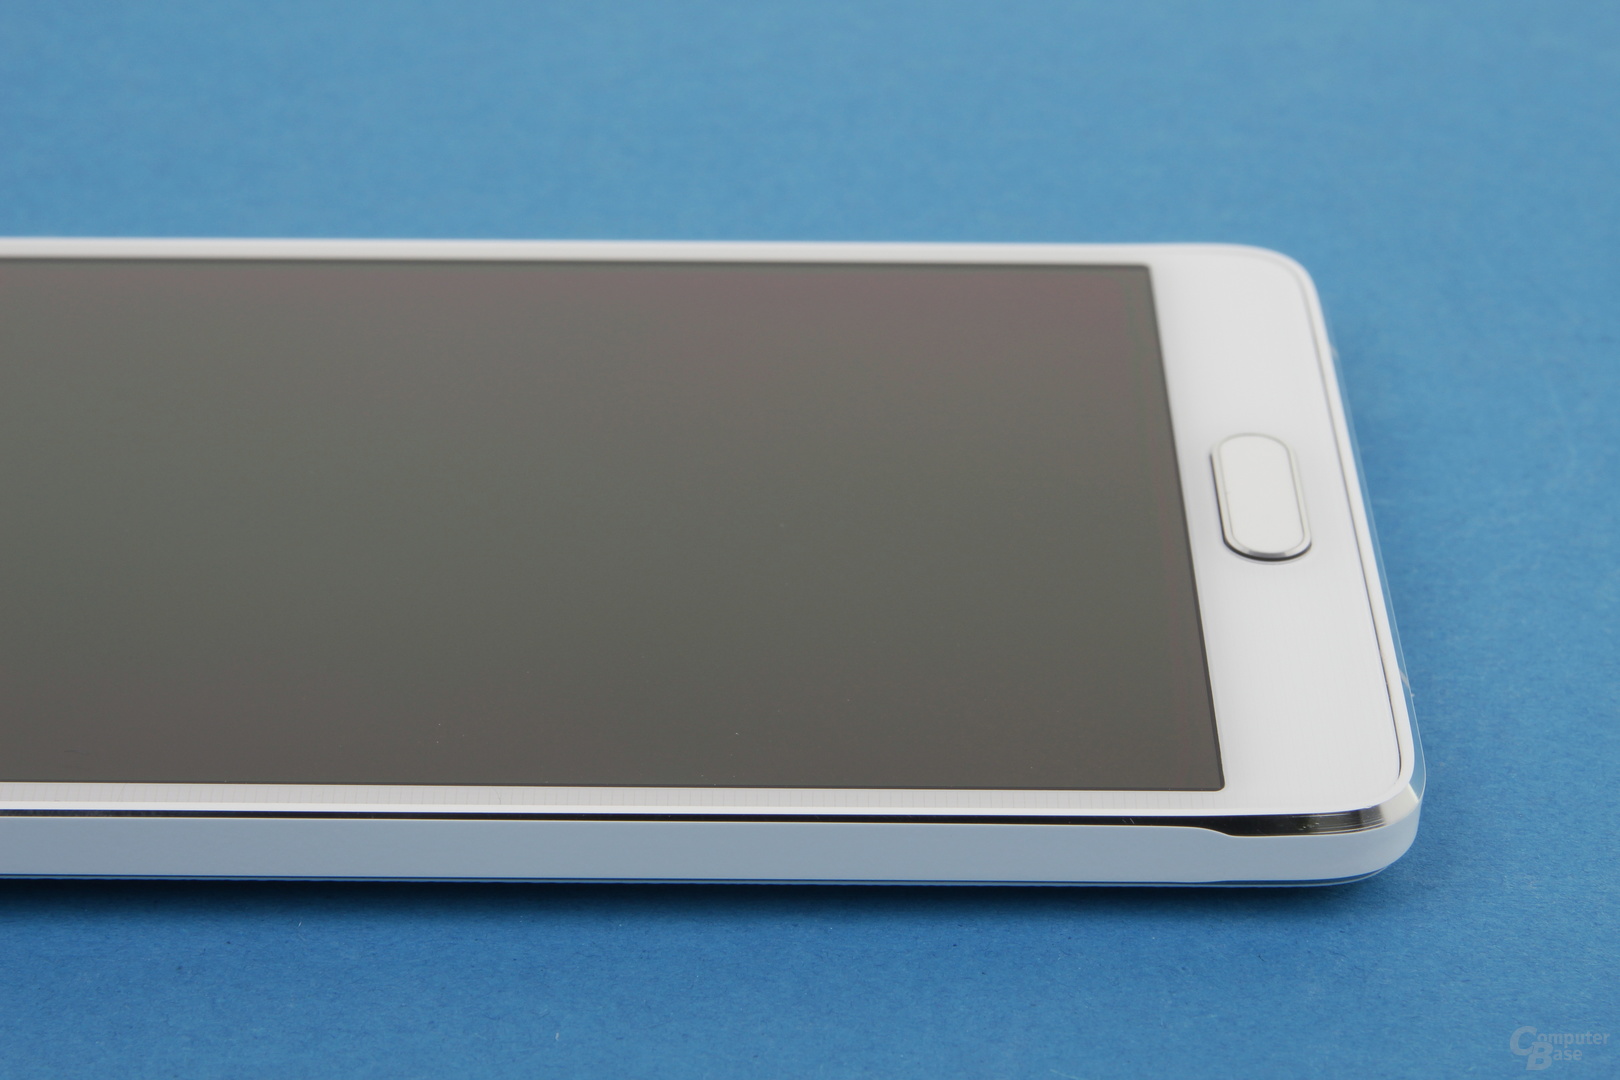 Samsung Galaxy Note 4: Jetzt mit Metallrahmen